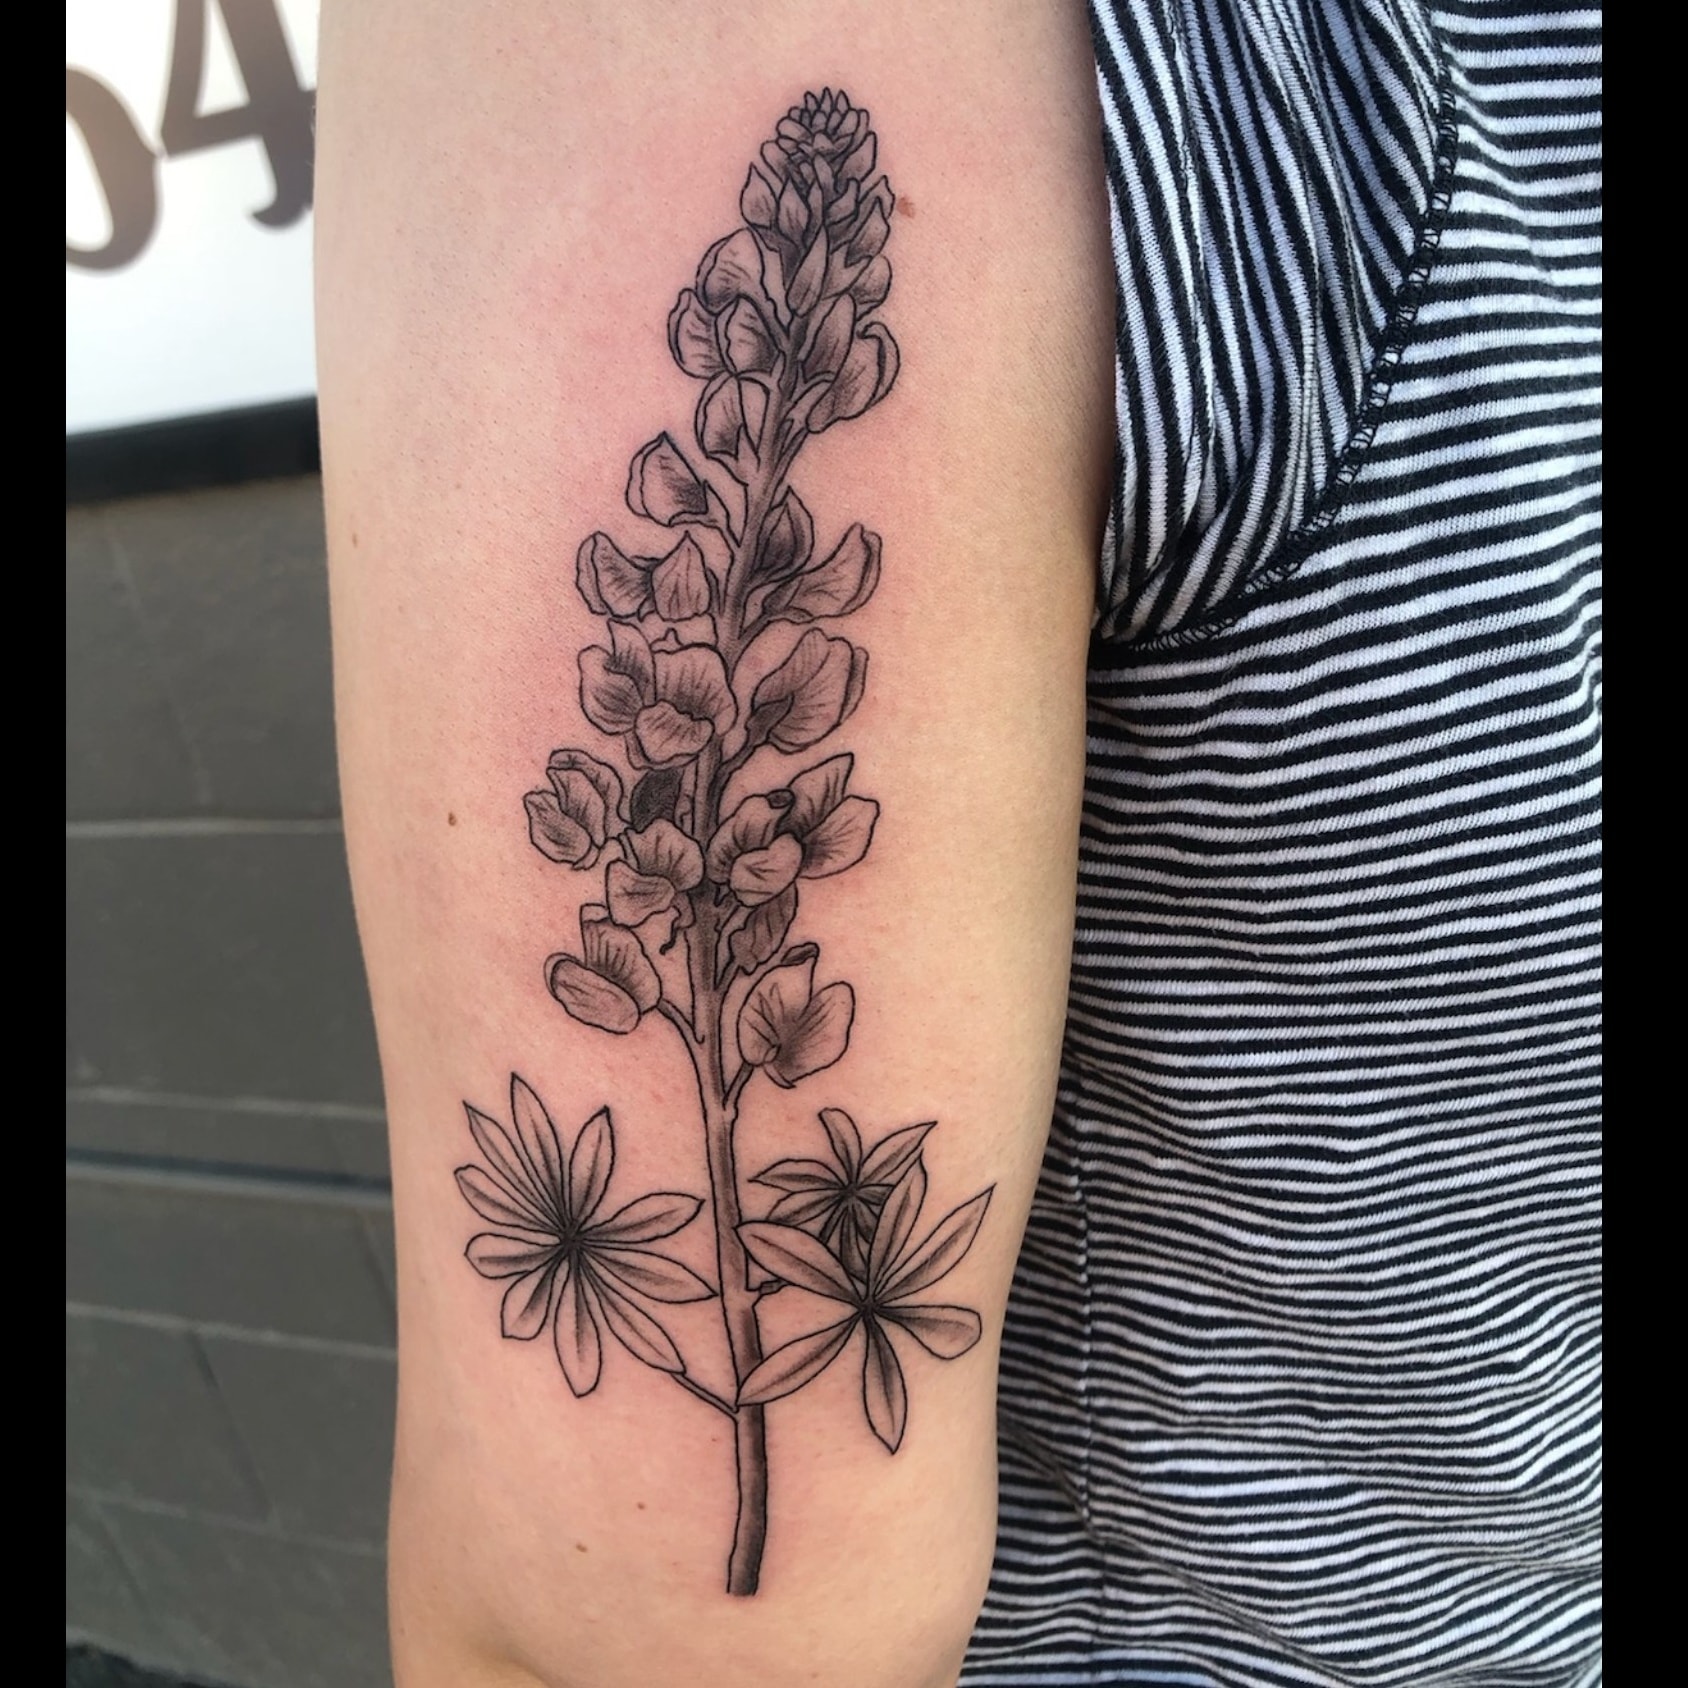 yucca plant tattoo